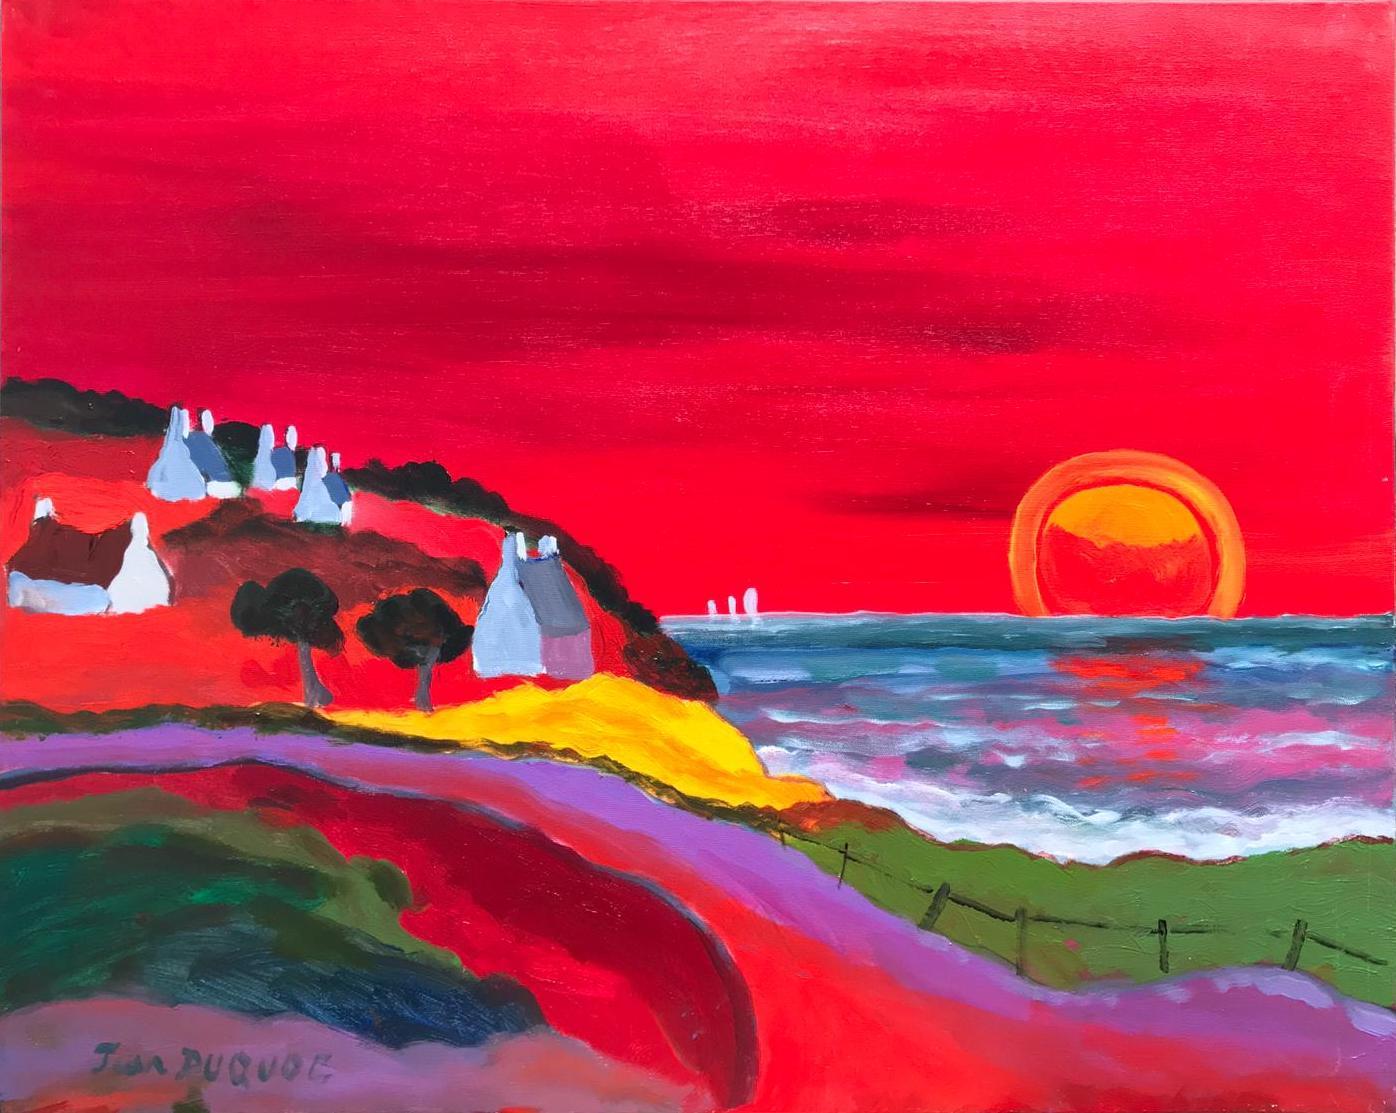 Acryl auf Leinwand

Jean Duquoc ist ein französischer Künstler, der 1937 geboren wurde und in Belz in der Bretagne in Frankreich lebt und arbeitet. In seinem Werk kann man die Geschicklichkeit erkennen, mit der er die Farbe einsetzt, indem er sich